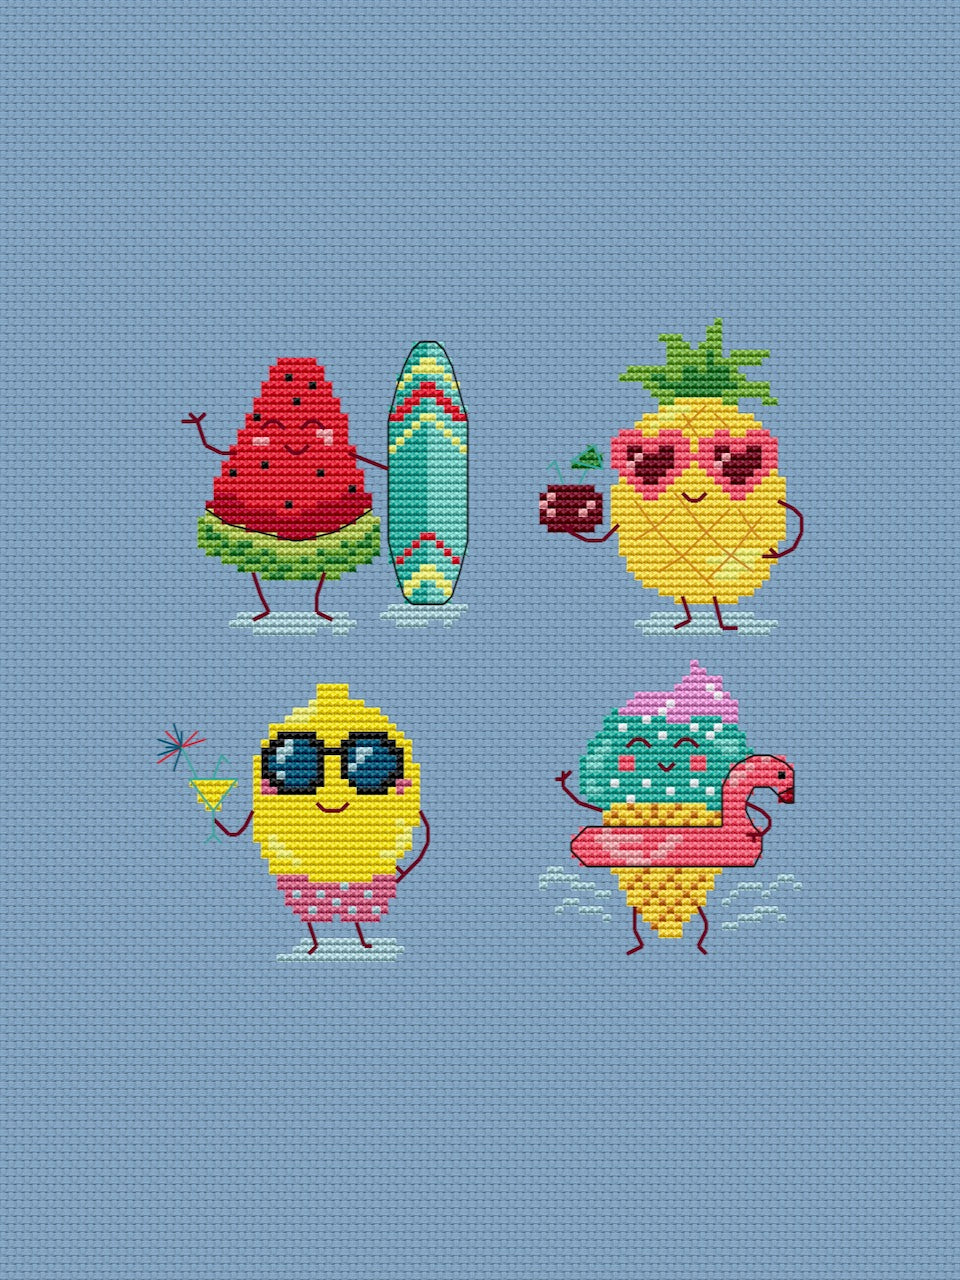 fun fruit stitch pattern